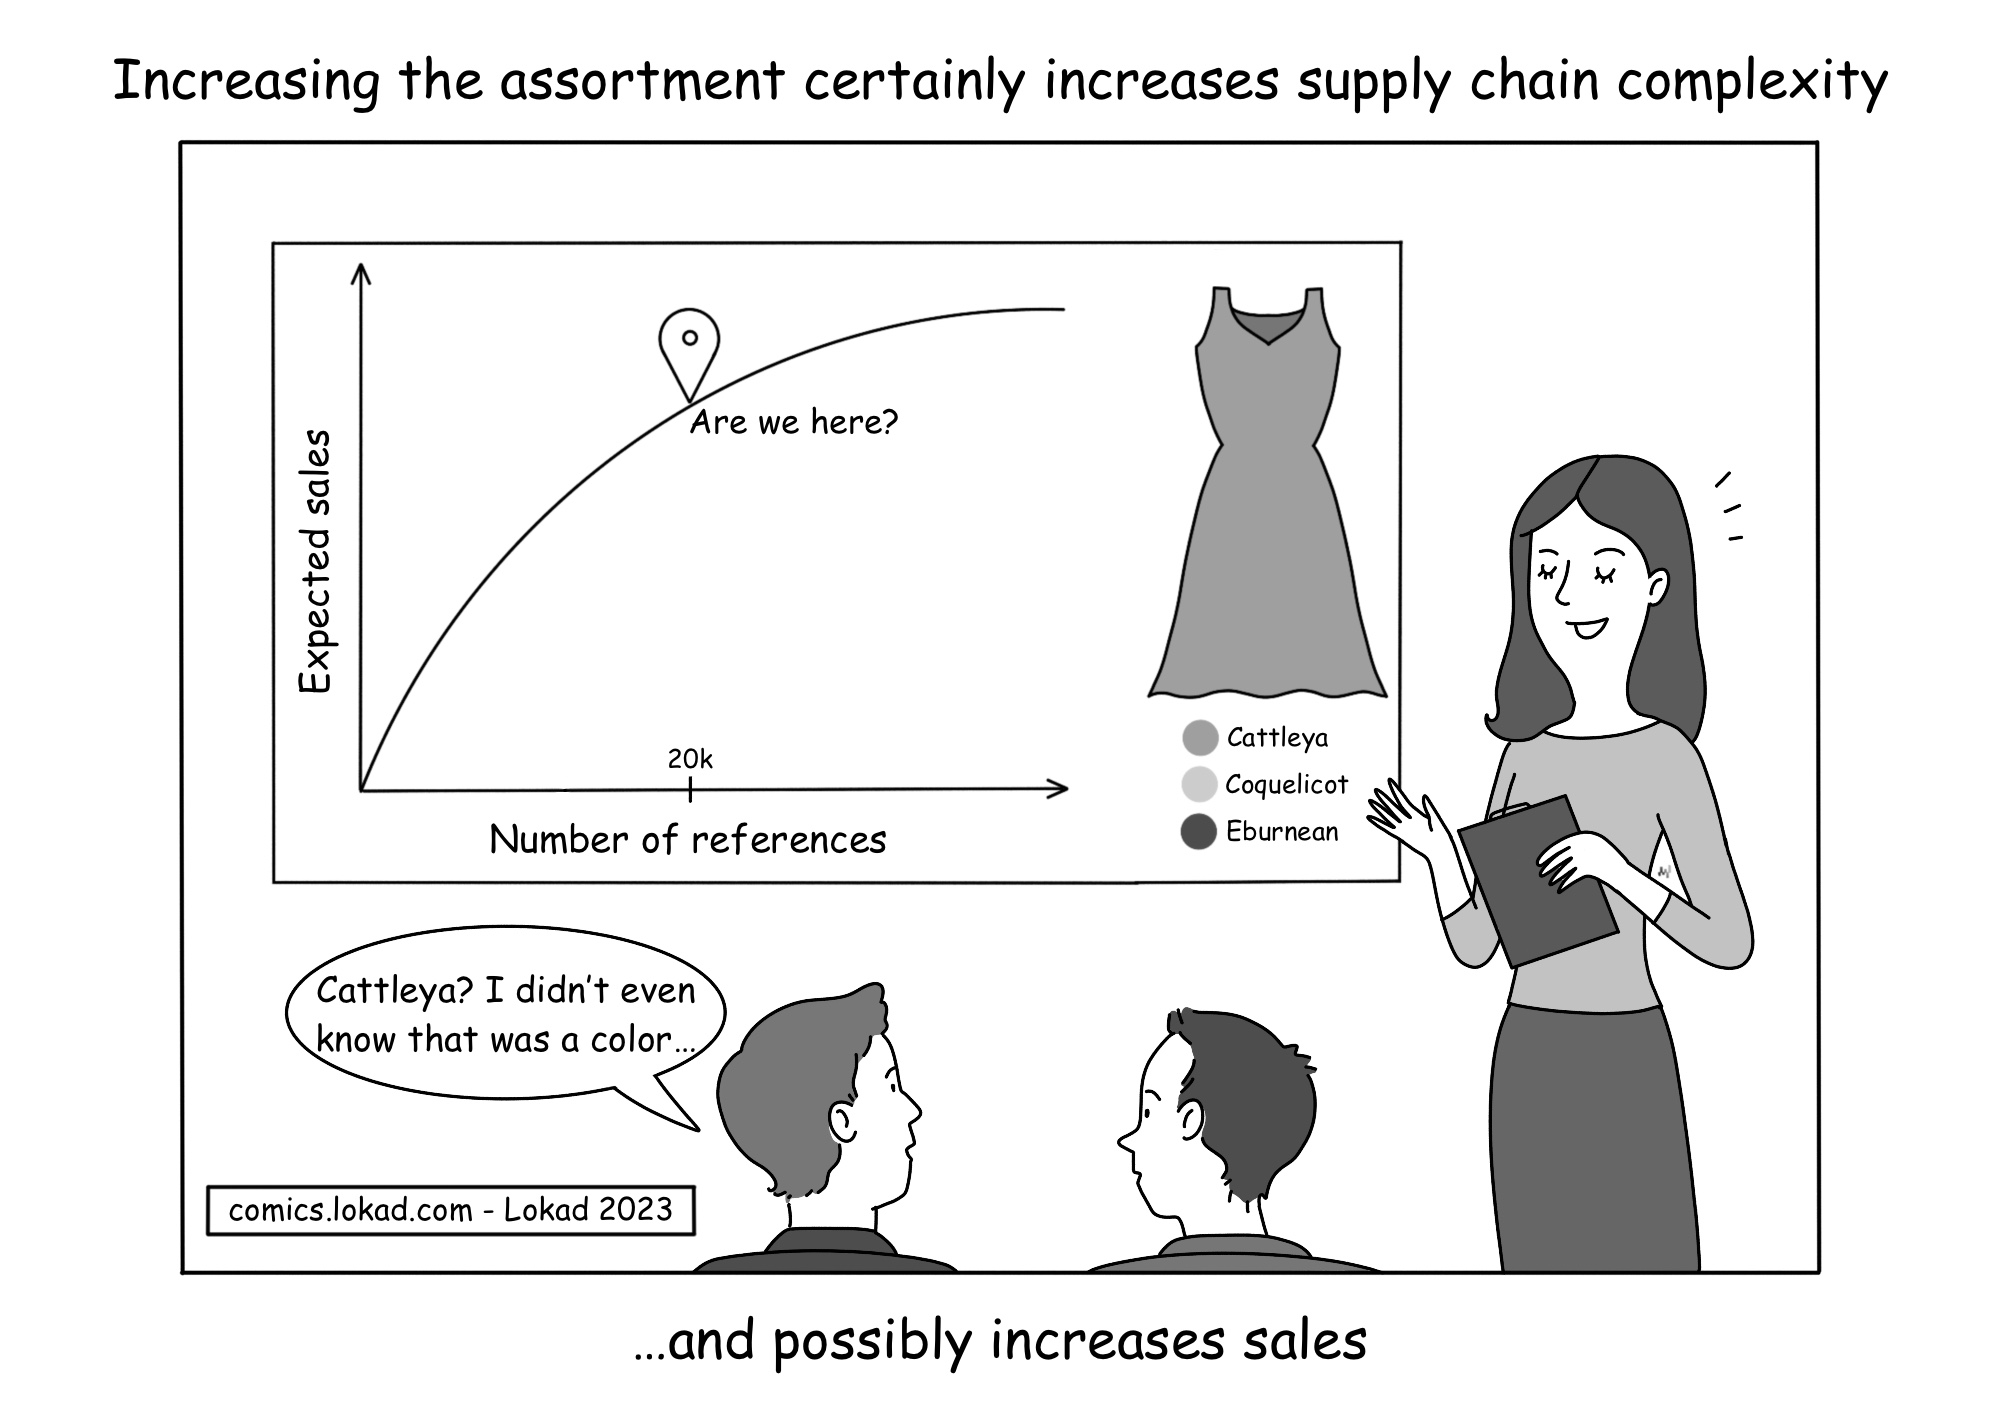 Aumentare l'assortimento aumenta certamente la complessità della supply chain